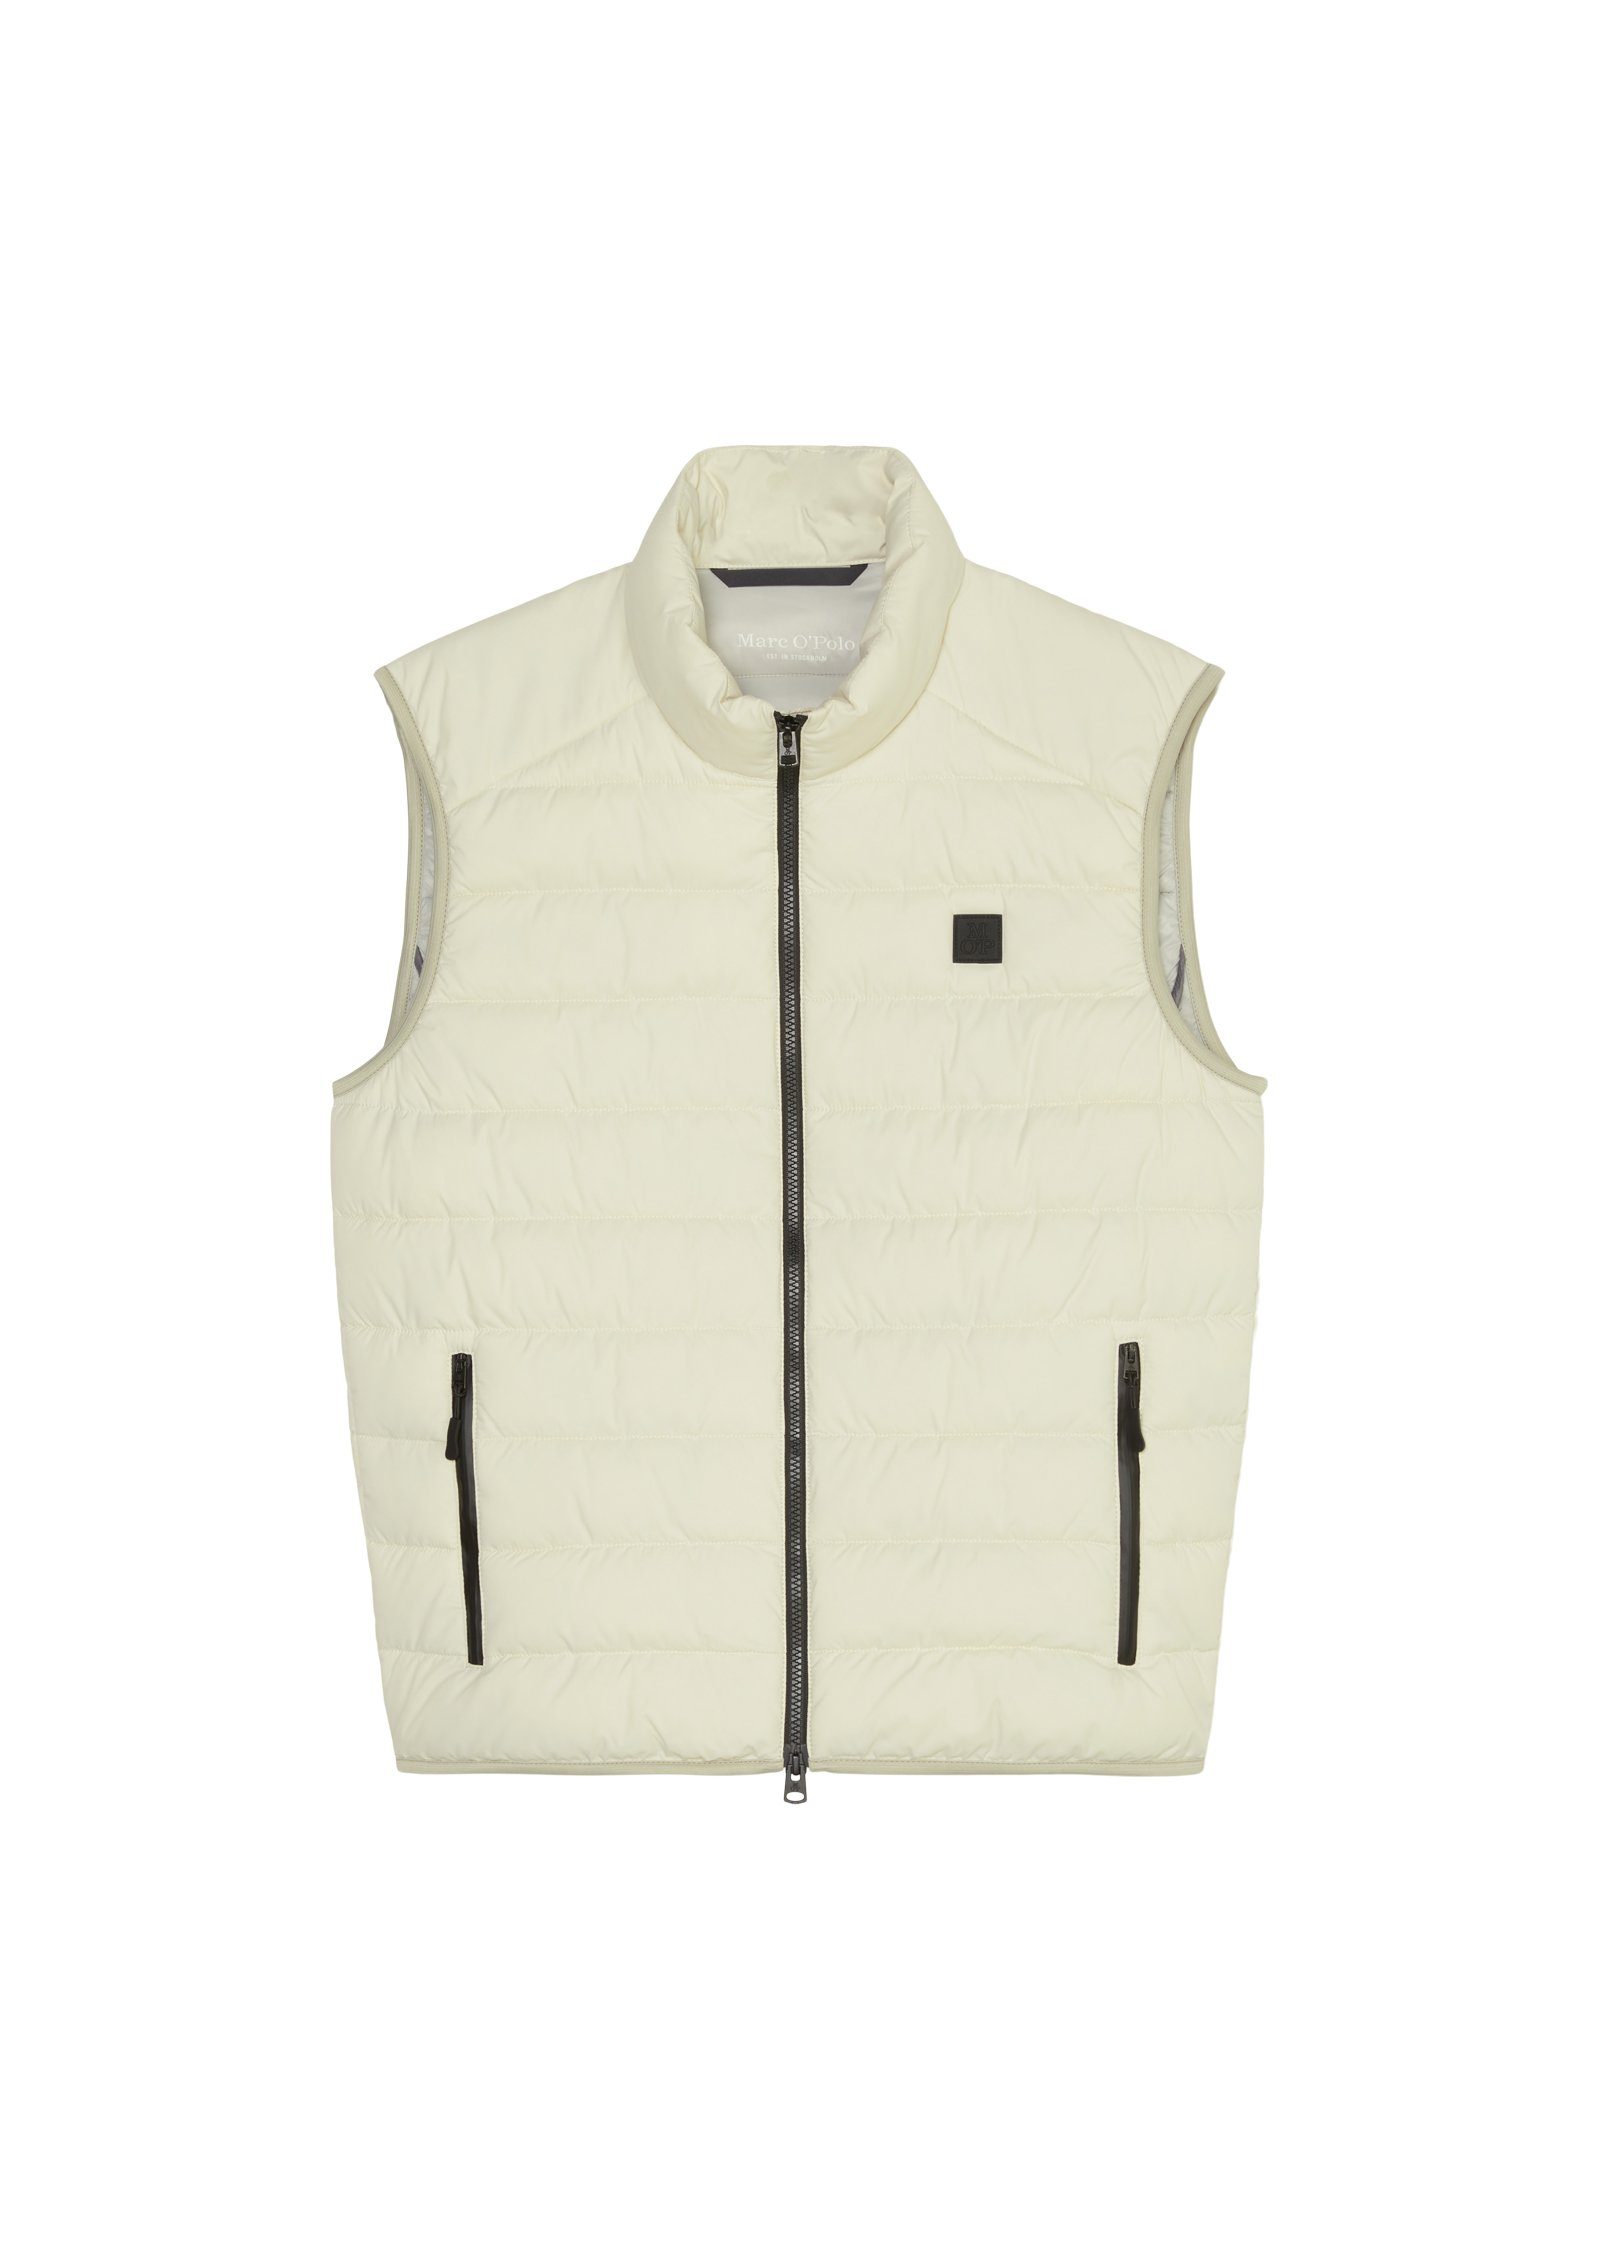 Marc O'Polo Steppweste Vest, sdnd, wasserabweisender linen stand-up Oberfläche collar white mit